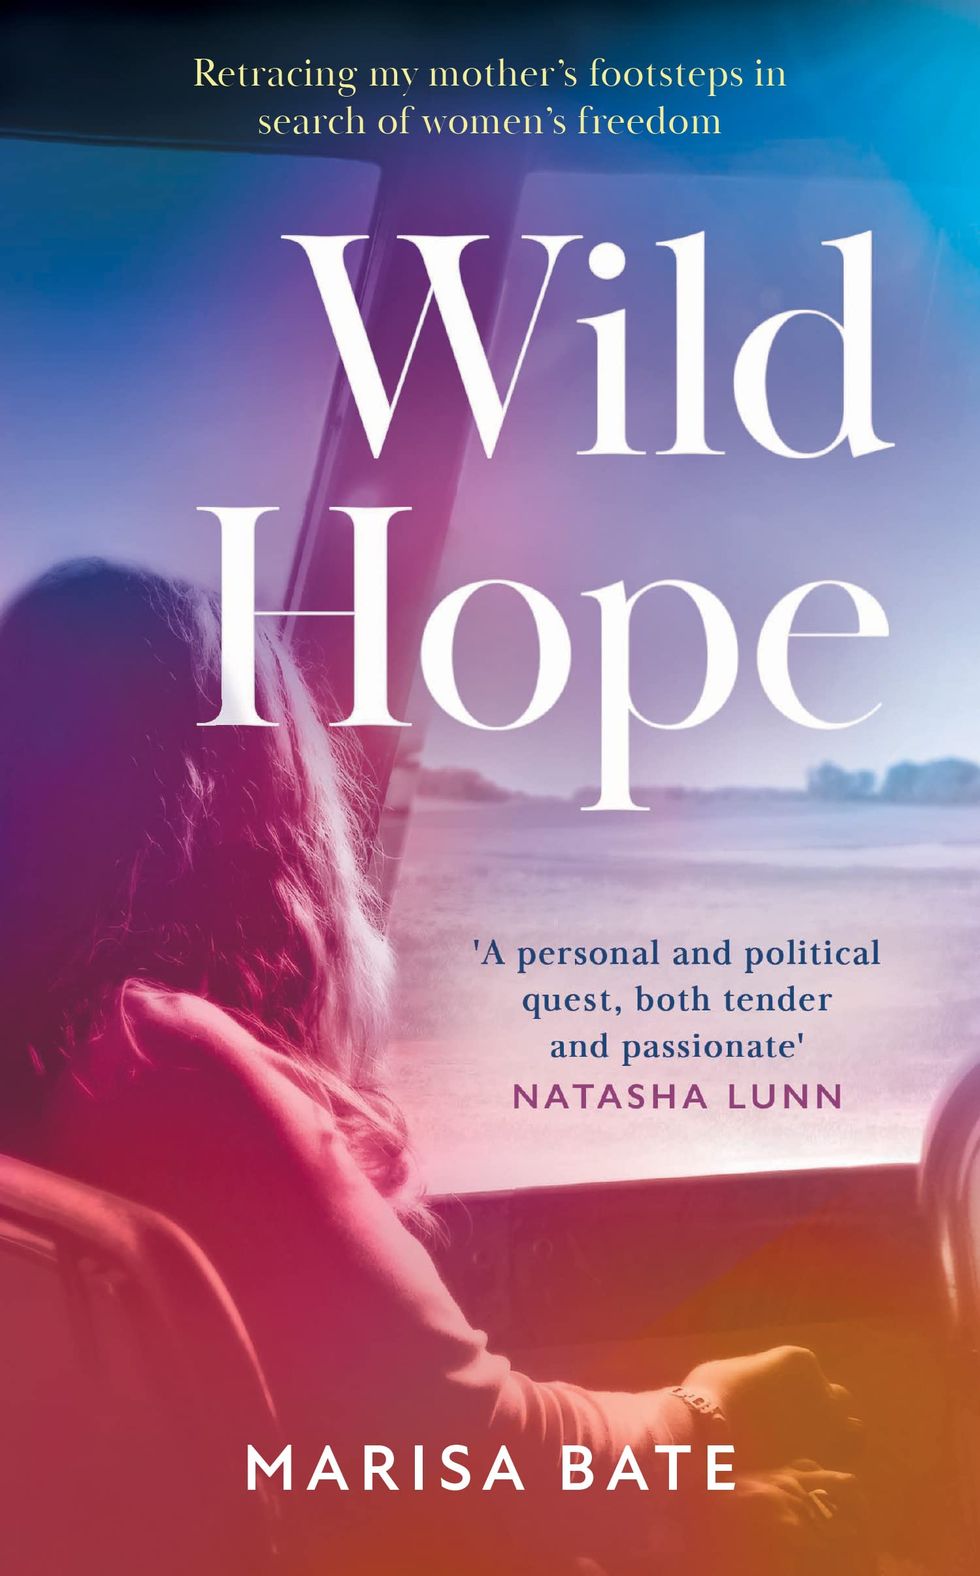 Wild Hope by Marisa Bate